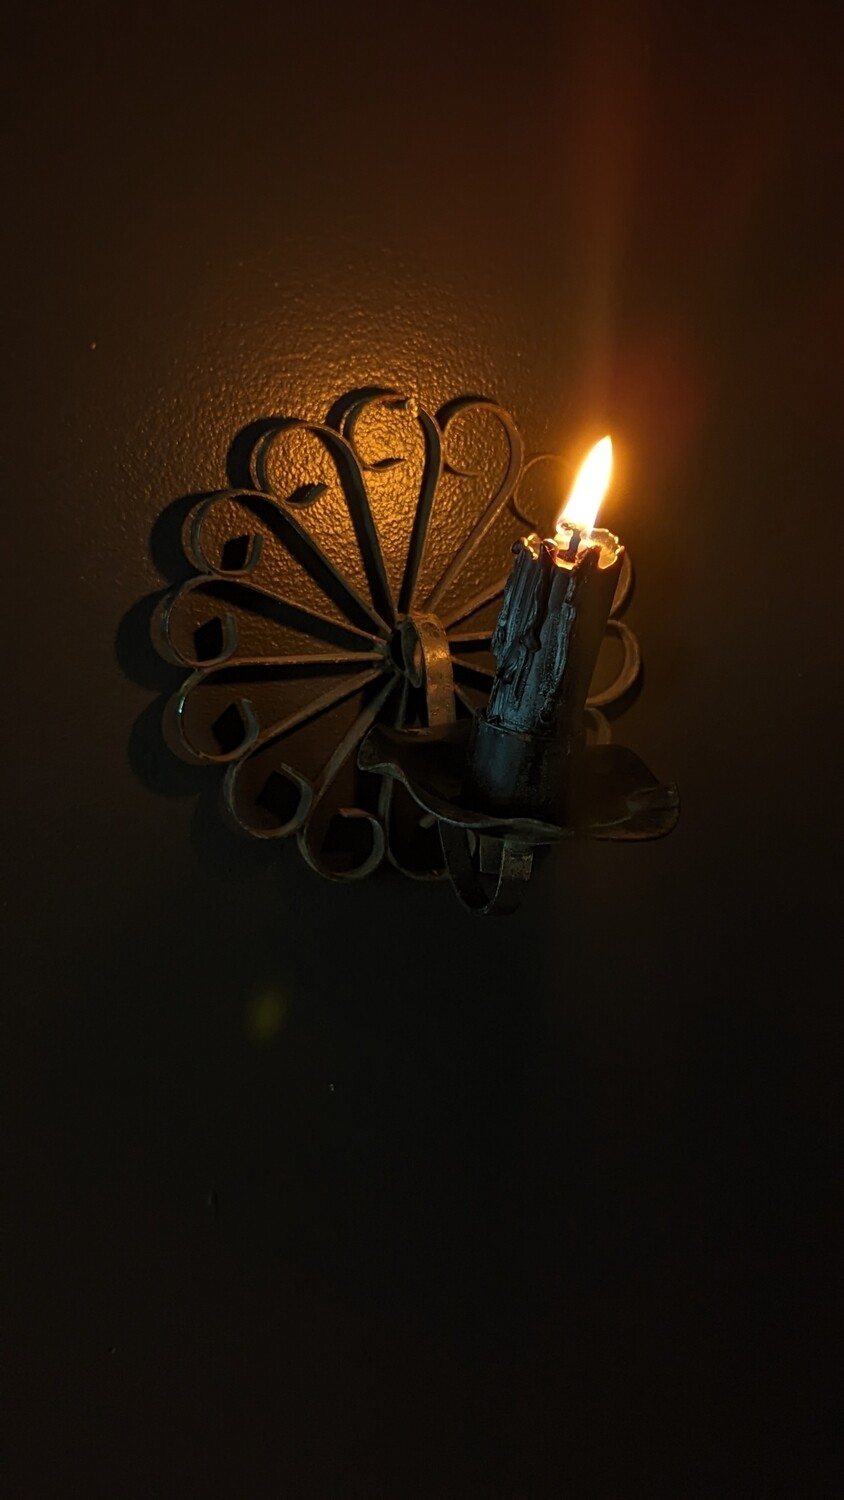 Metal floral candle holder